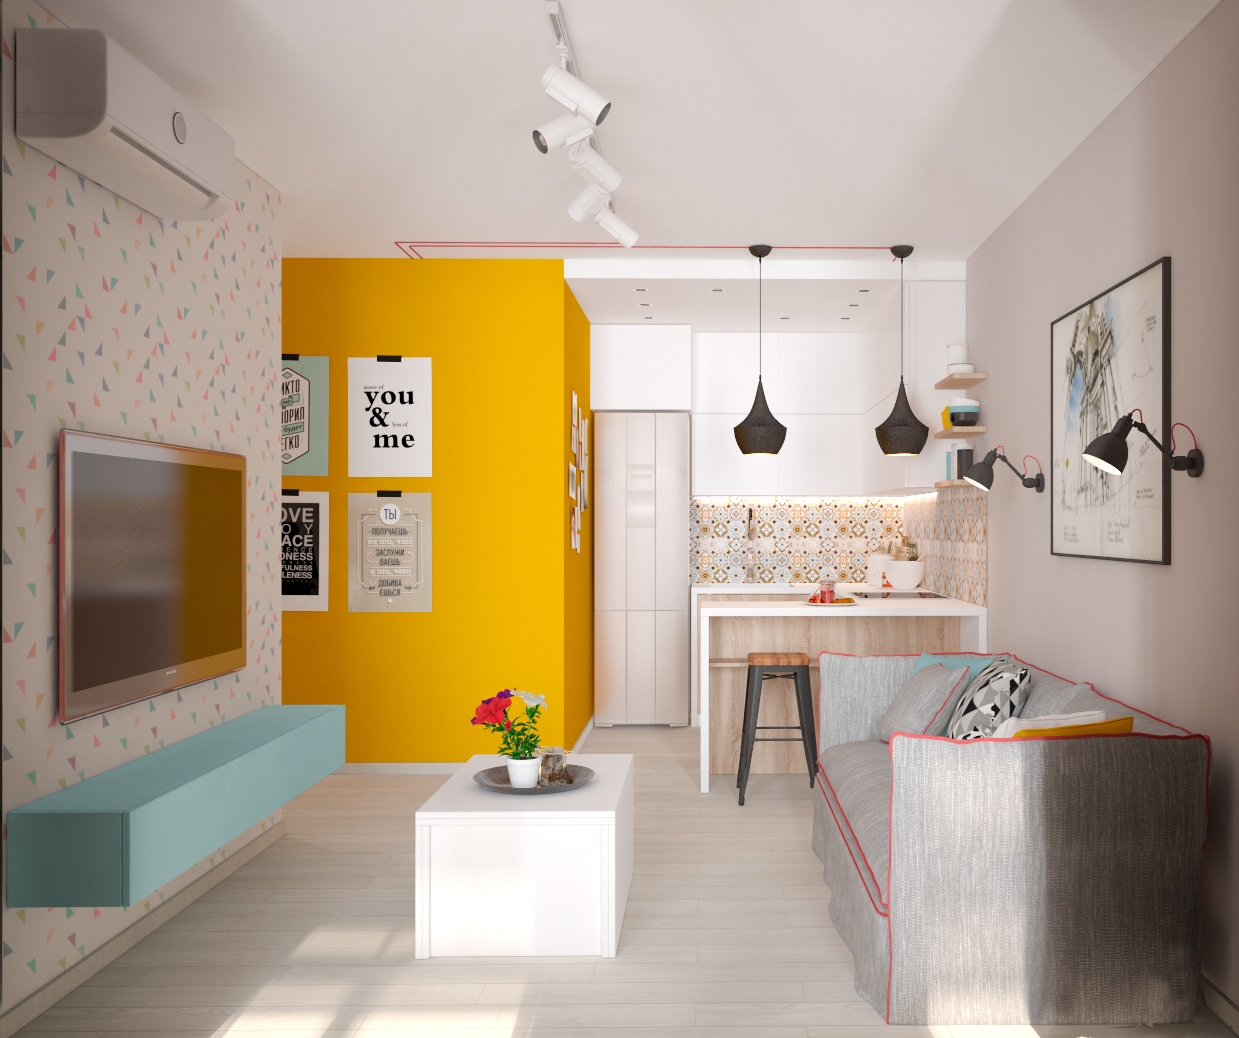 Пример дизайна интерьера маленькой кухни на фото